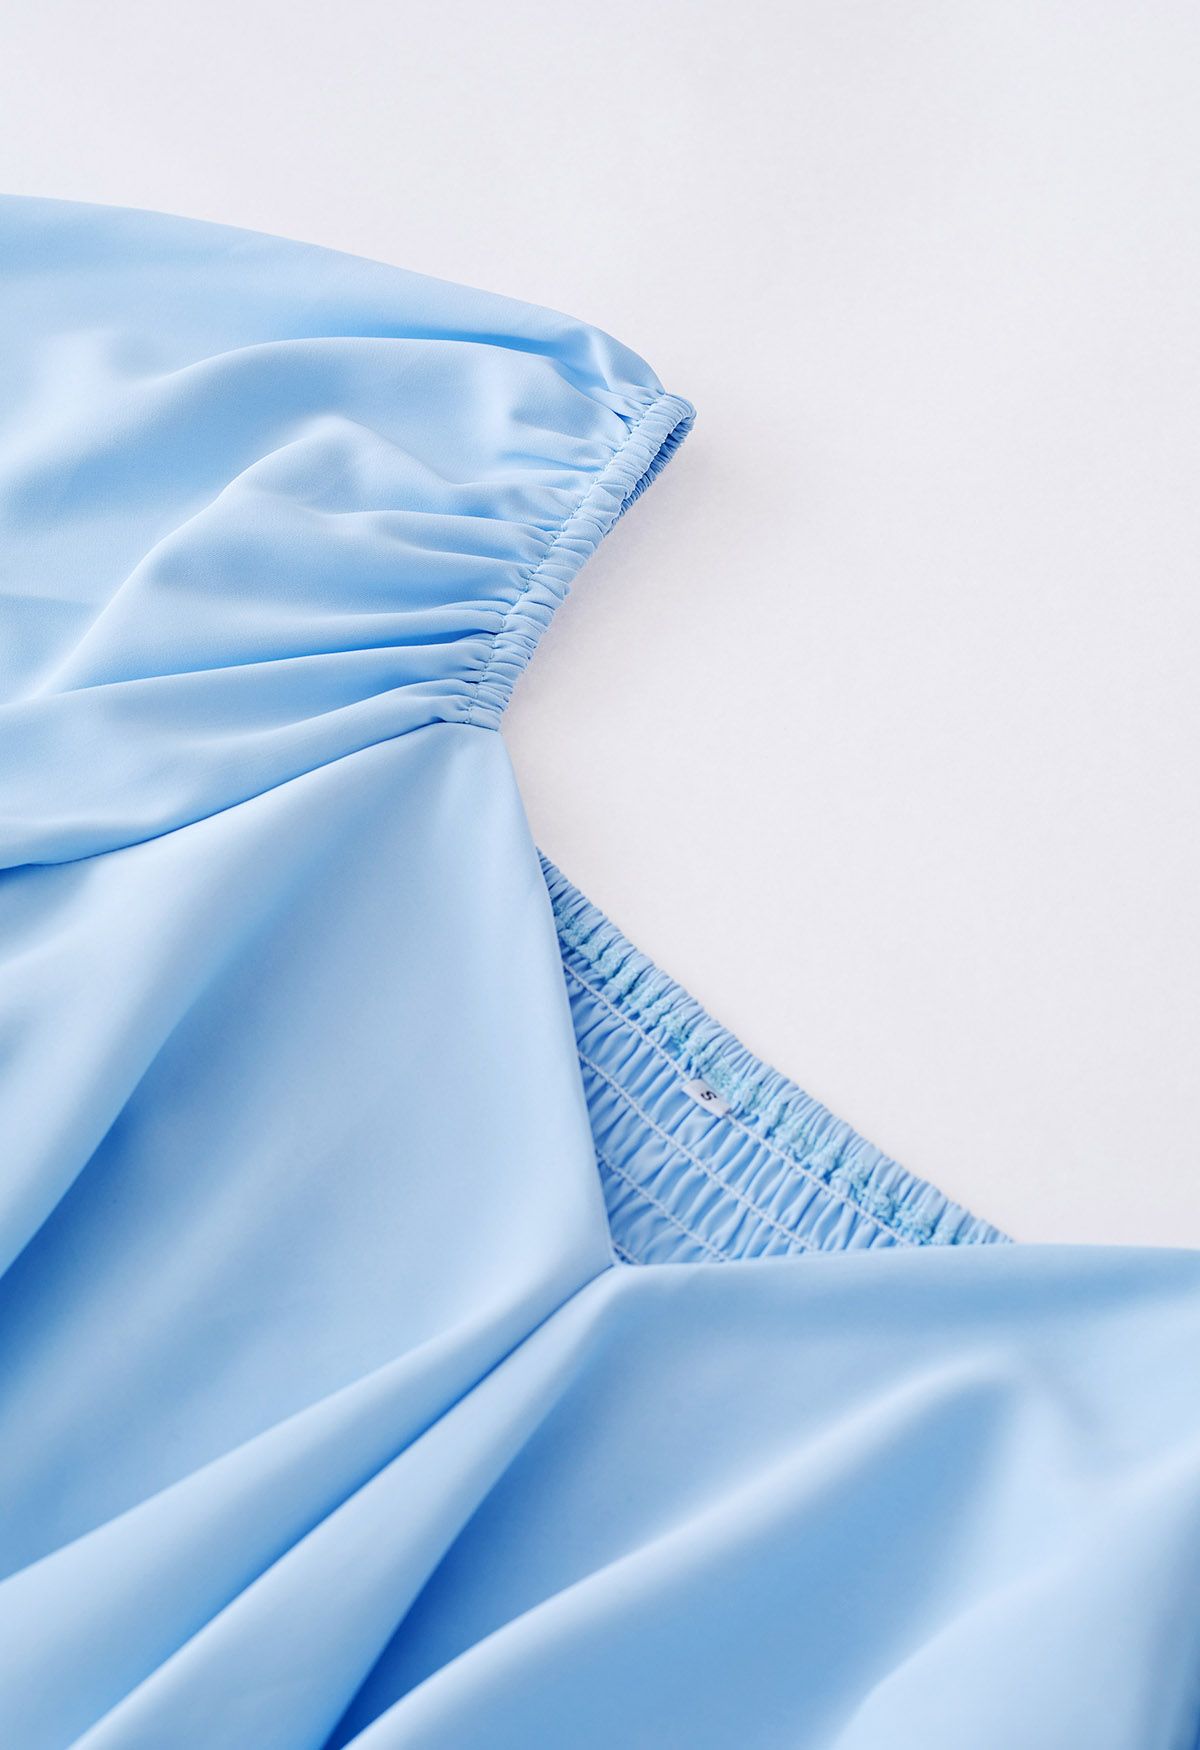 Cross Ribbon Flutter Sleeves Ruffle Dress in Blue